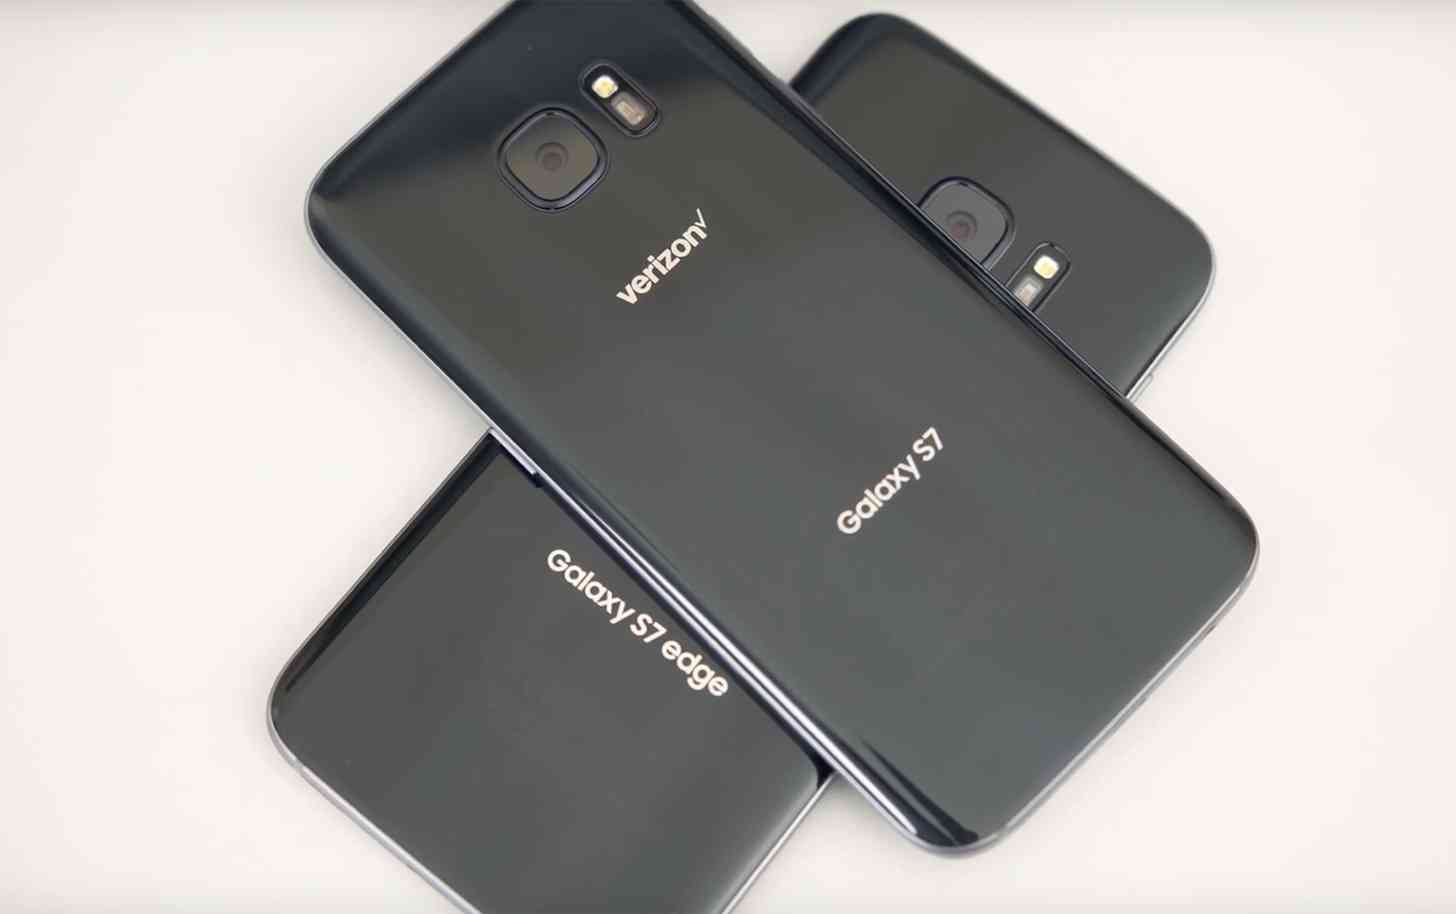 Verizon Galaxy S7, S7 edge